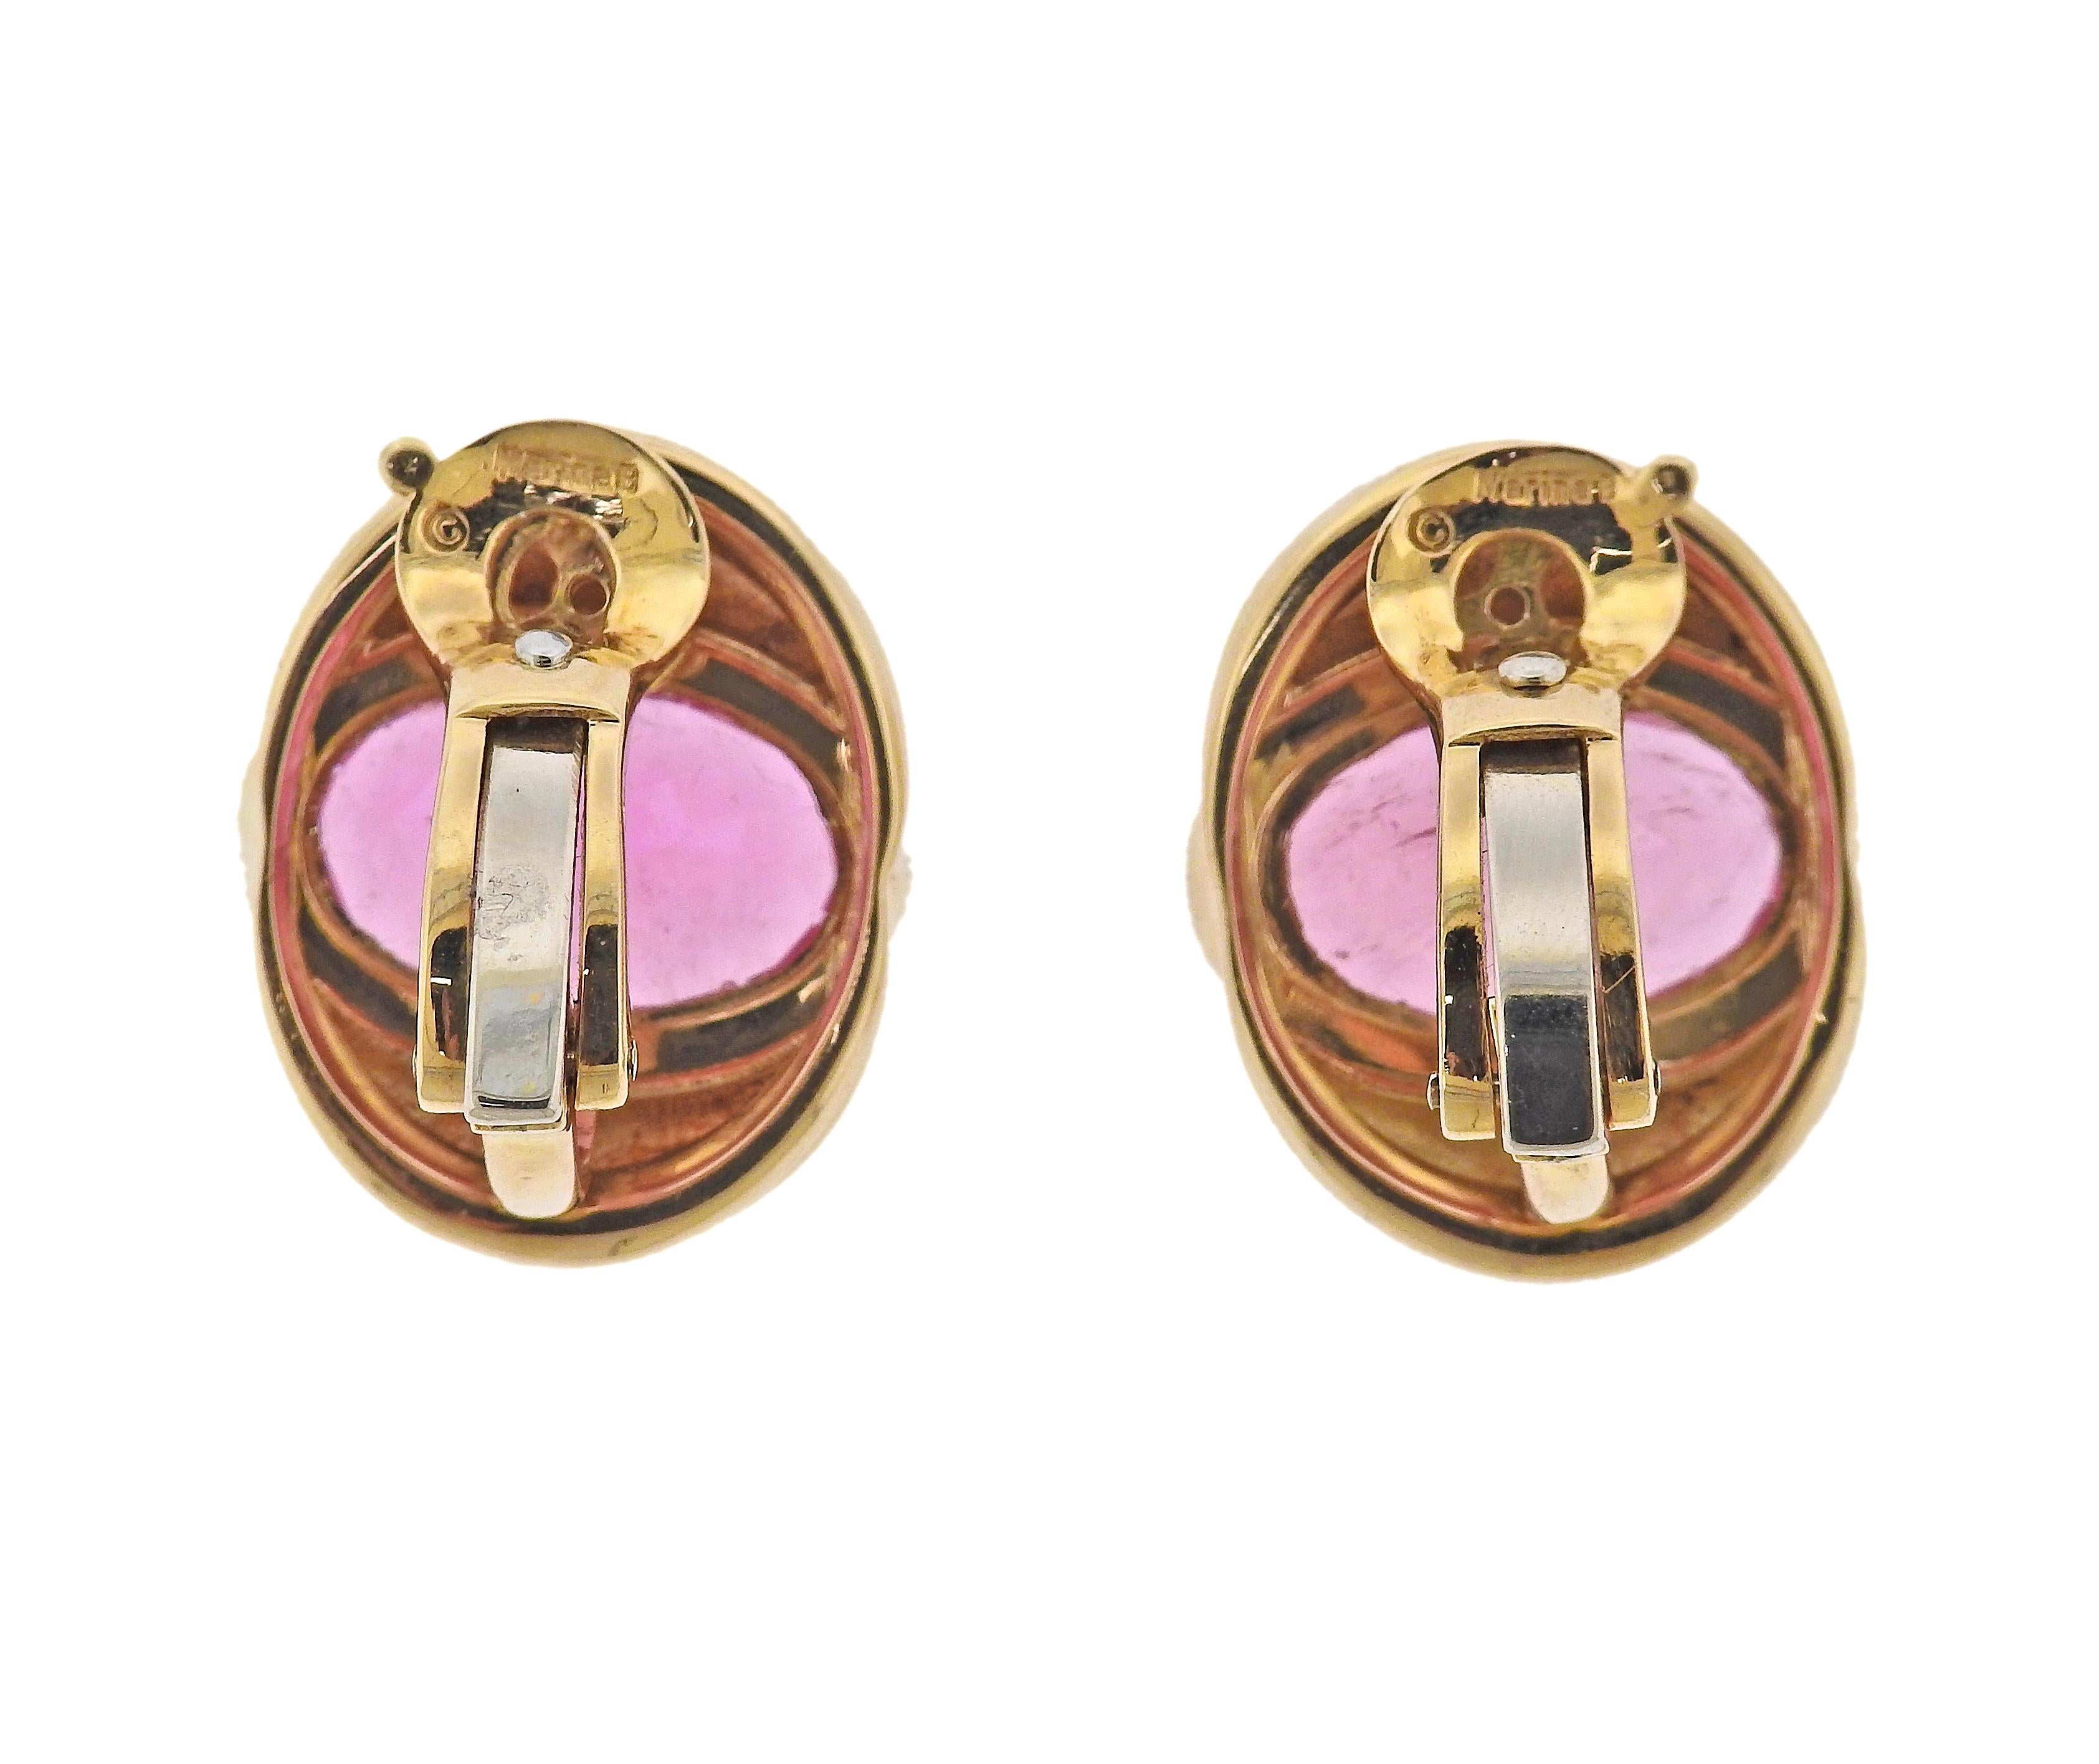 Paar Marina B-Ohrringe aus 18 Karat Gold, mit ovalen rosa Turmalinen in der Mitte, je ca. 6ct. Die Ohrringe sind 19 mm x 24 mm groß. Markiert: Marina B, MB, C2638, 750. Gewicht - 25,4 Gramm.